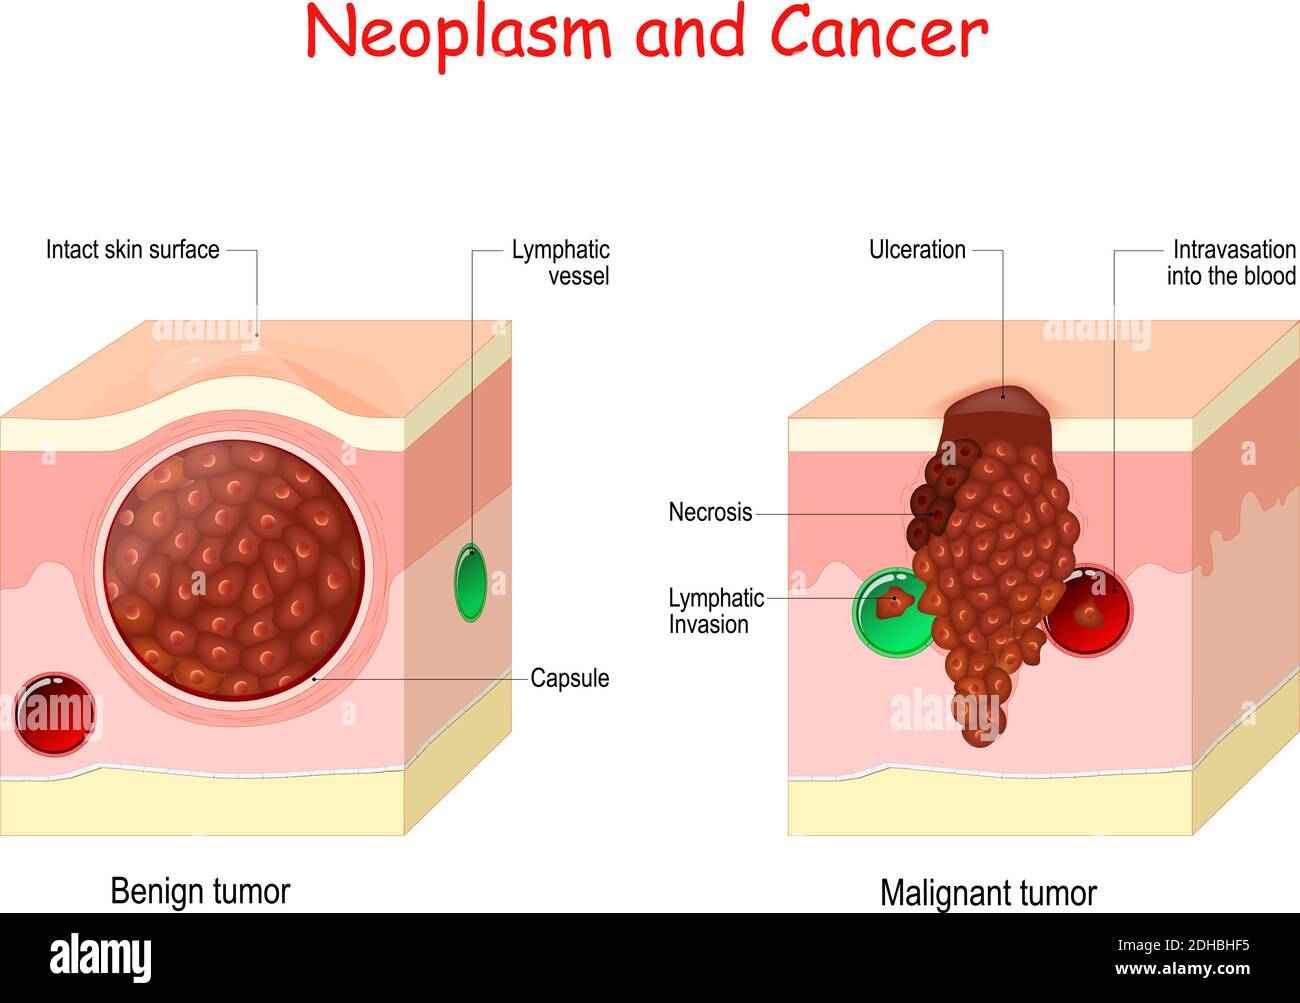 Confronto e differenza tra tumore maligno e tumore benigno. Il tumore benigno ha una capsula. Le cellule di tumore maligno presentano necrosi Illustrazione Vettoriale